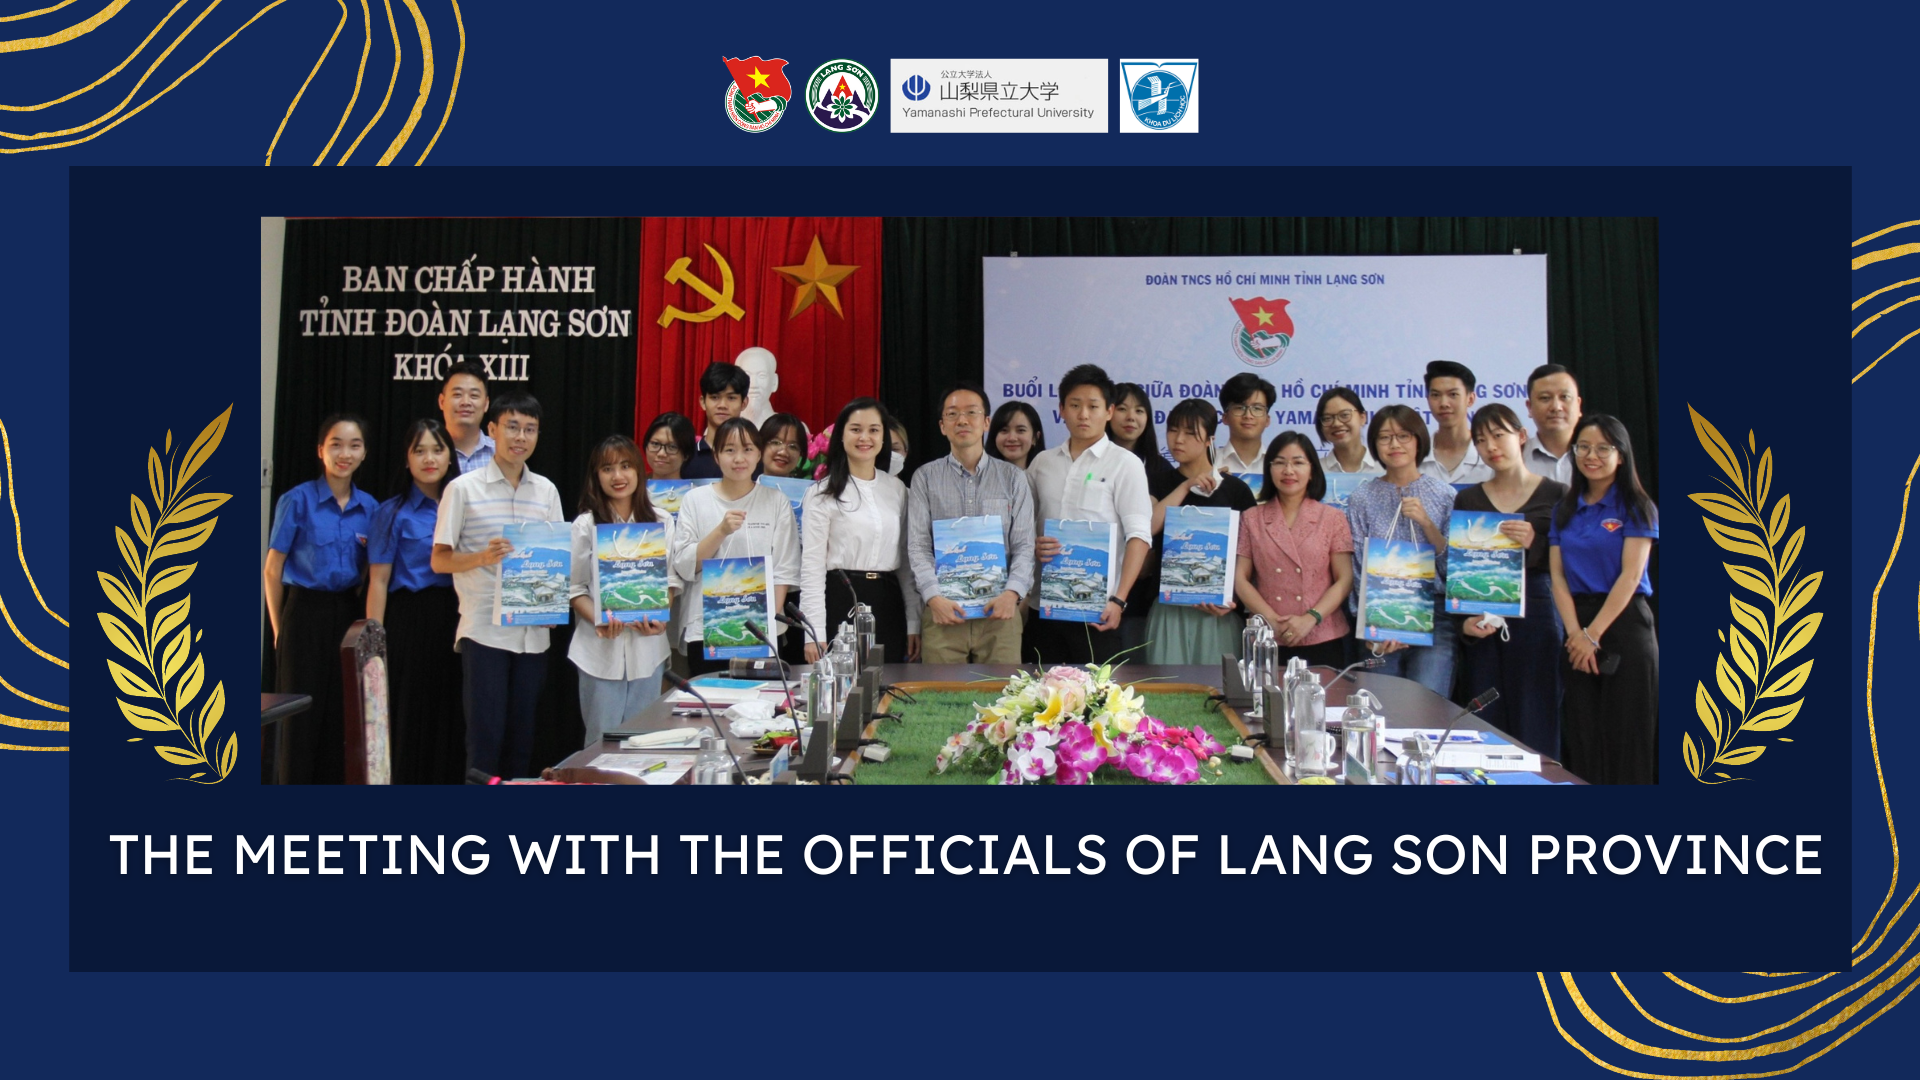 Dự án "Xây dựng chương trình giáo dục Thanh niên nhằm mục đích thúc đẩy giáo dục trải nghiệm ở khu vực nông thôn huyện Bắc Sơn tỉnh Lạng Sơn"